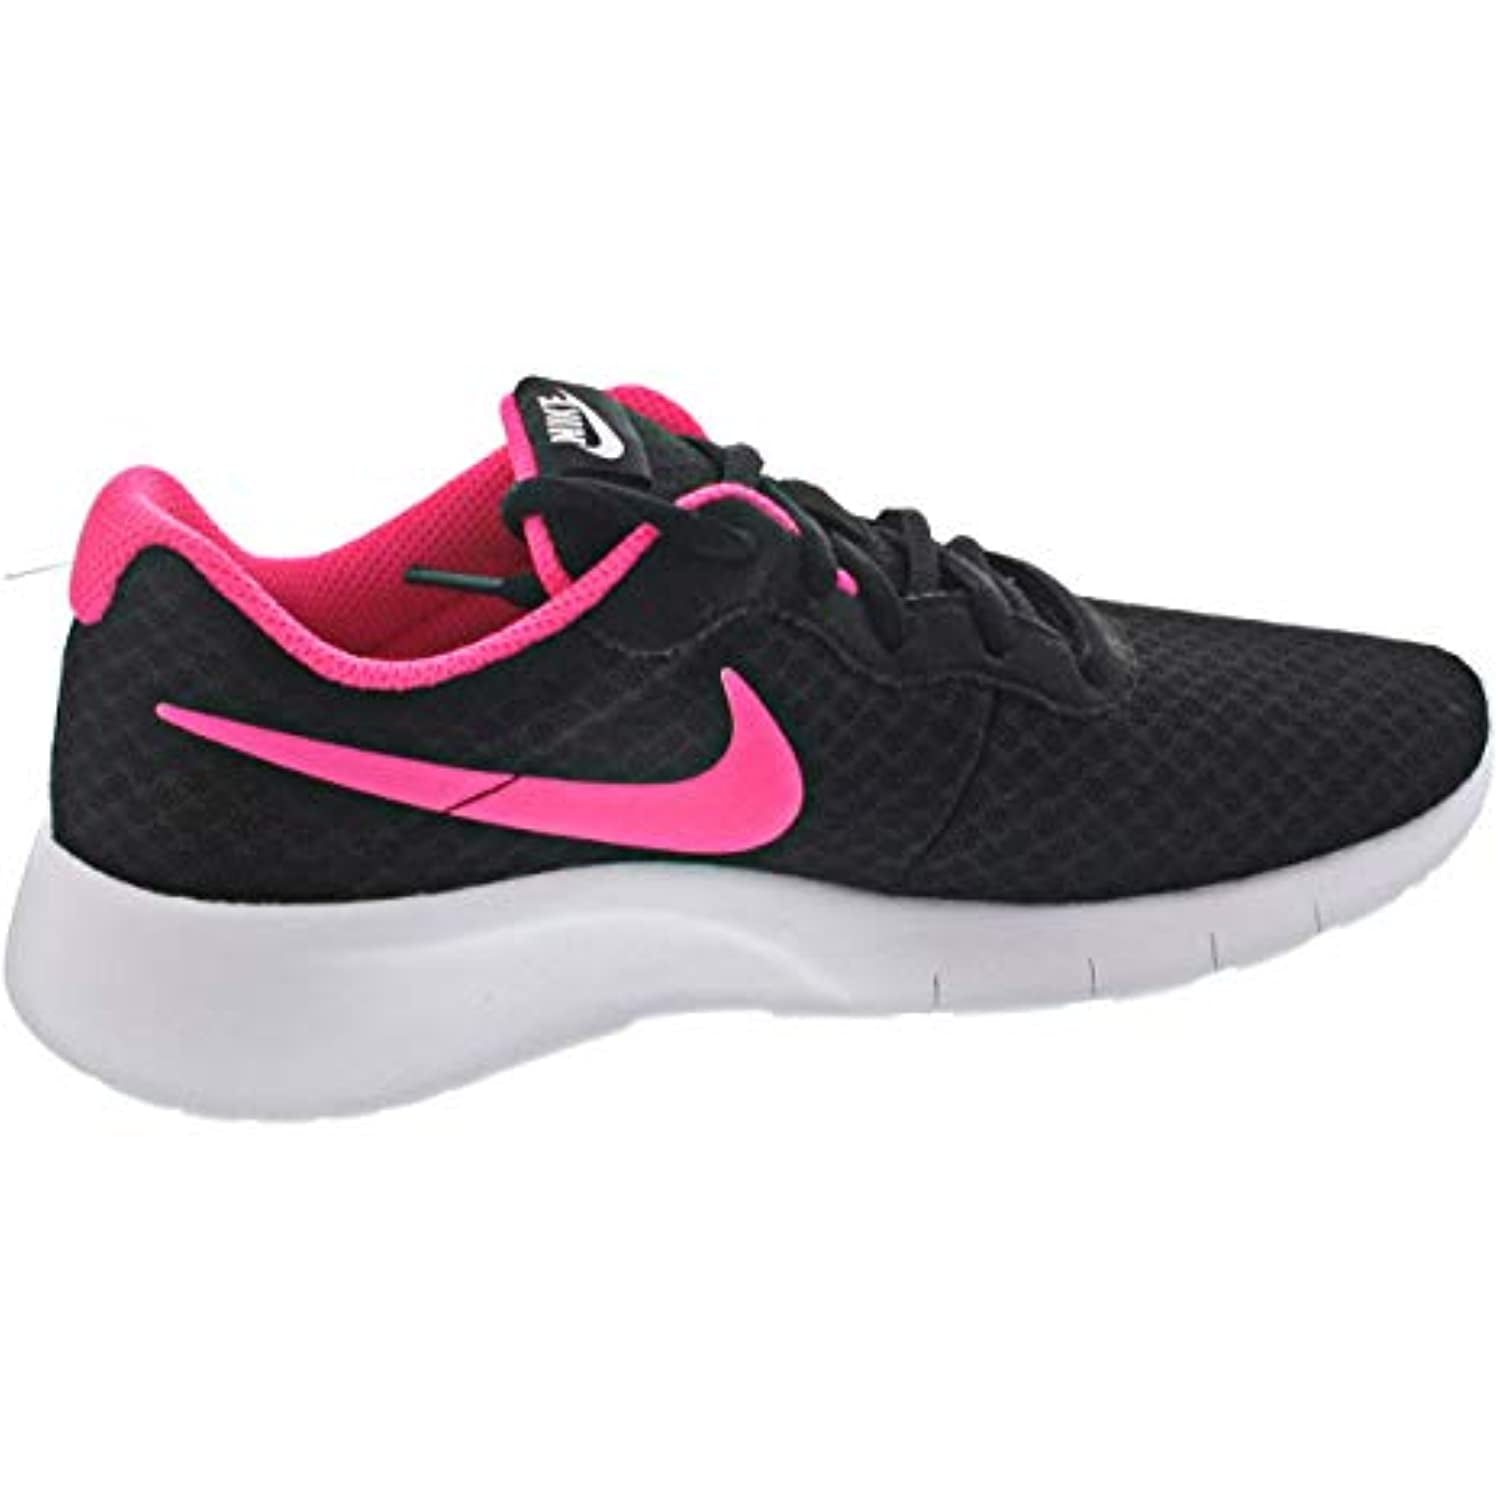 Nike Kids Tanjun (GS) Black/Hyper Pink White Running Shoe 4 US - Walmart.com